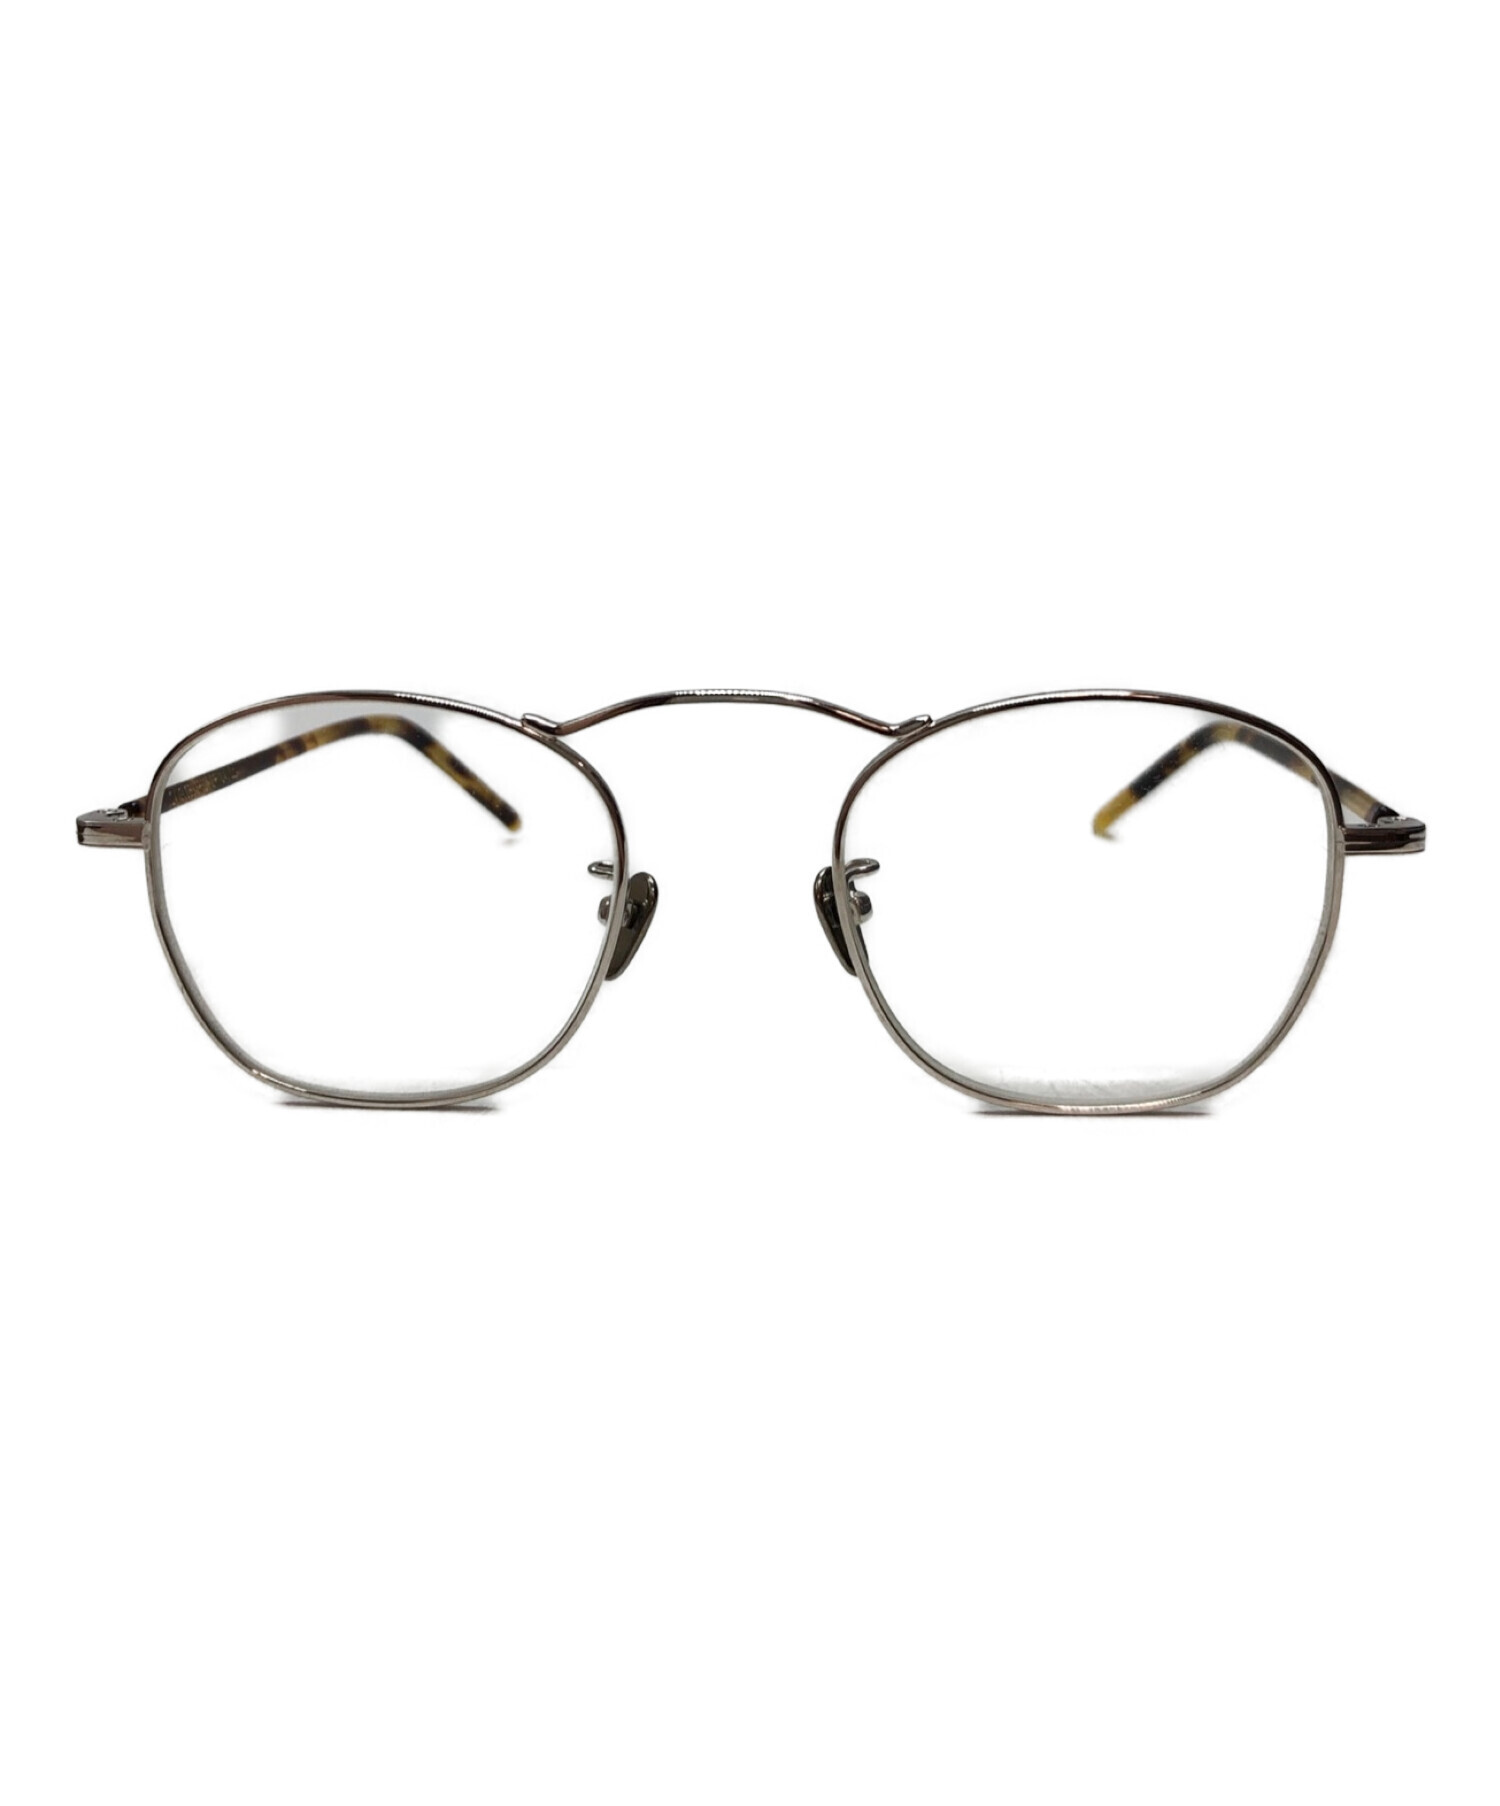 O.J. GLOBE SPECS OPTICAL Co . (オールドジョー グローブスペックス オプティカル) 眼鏡/サングラス